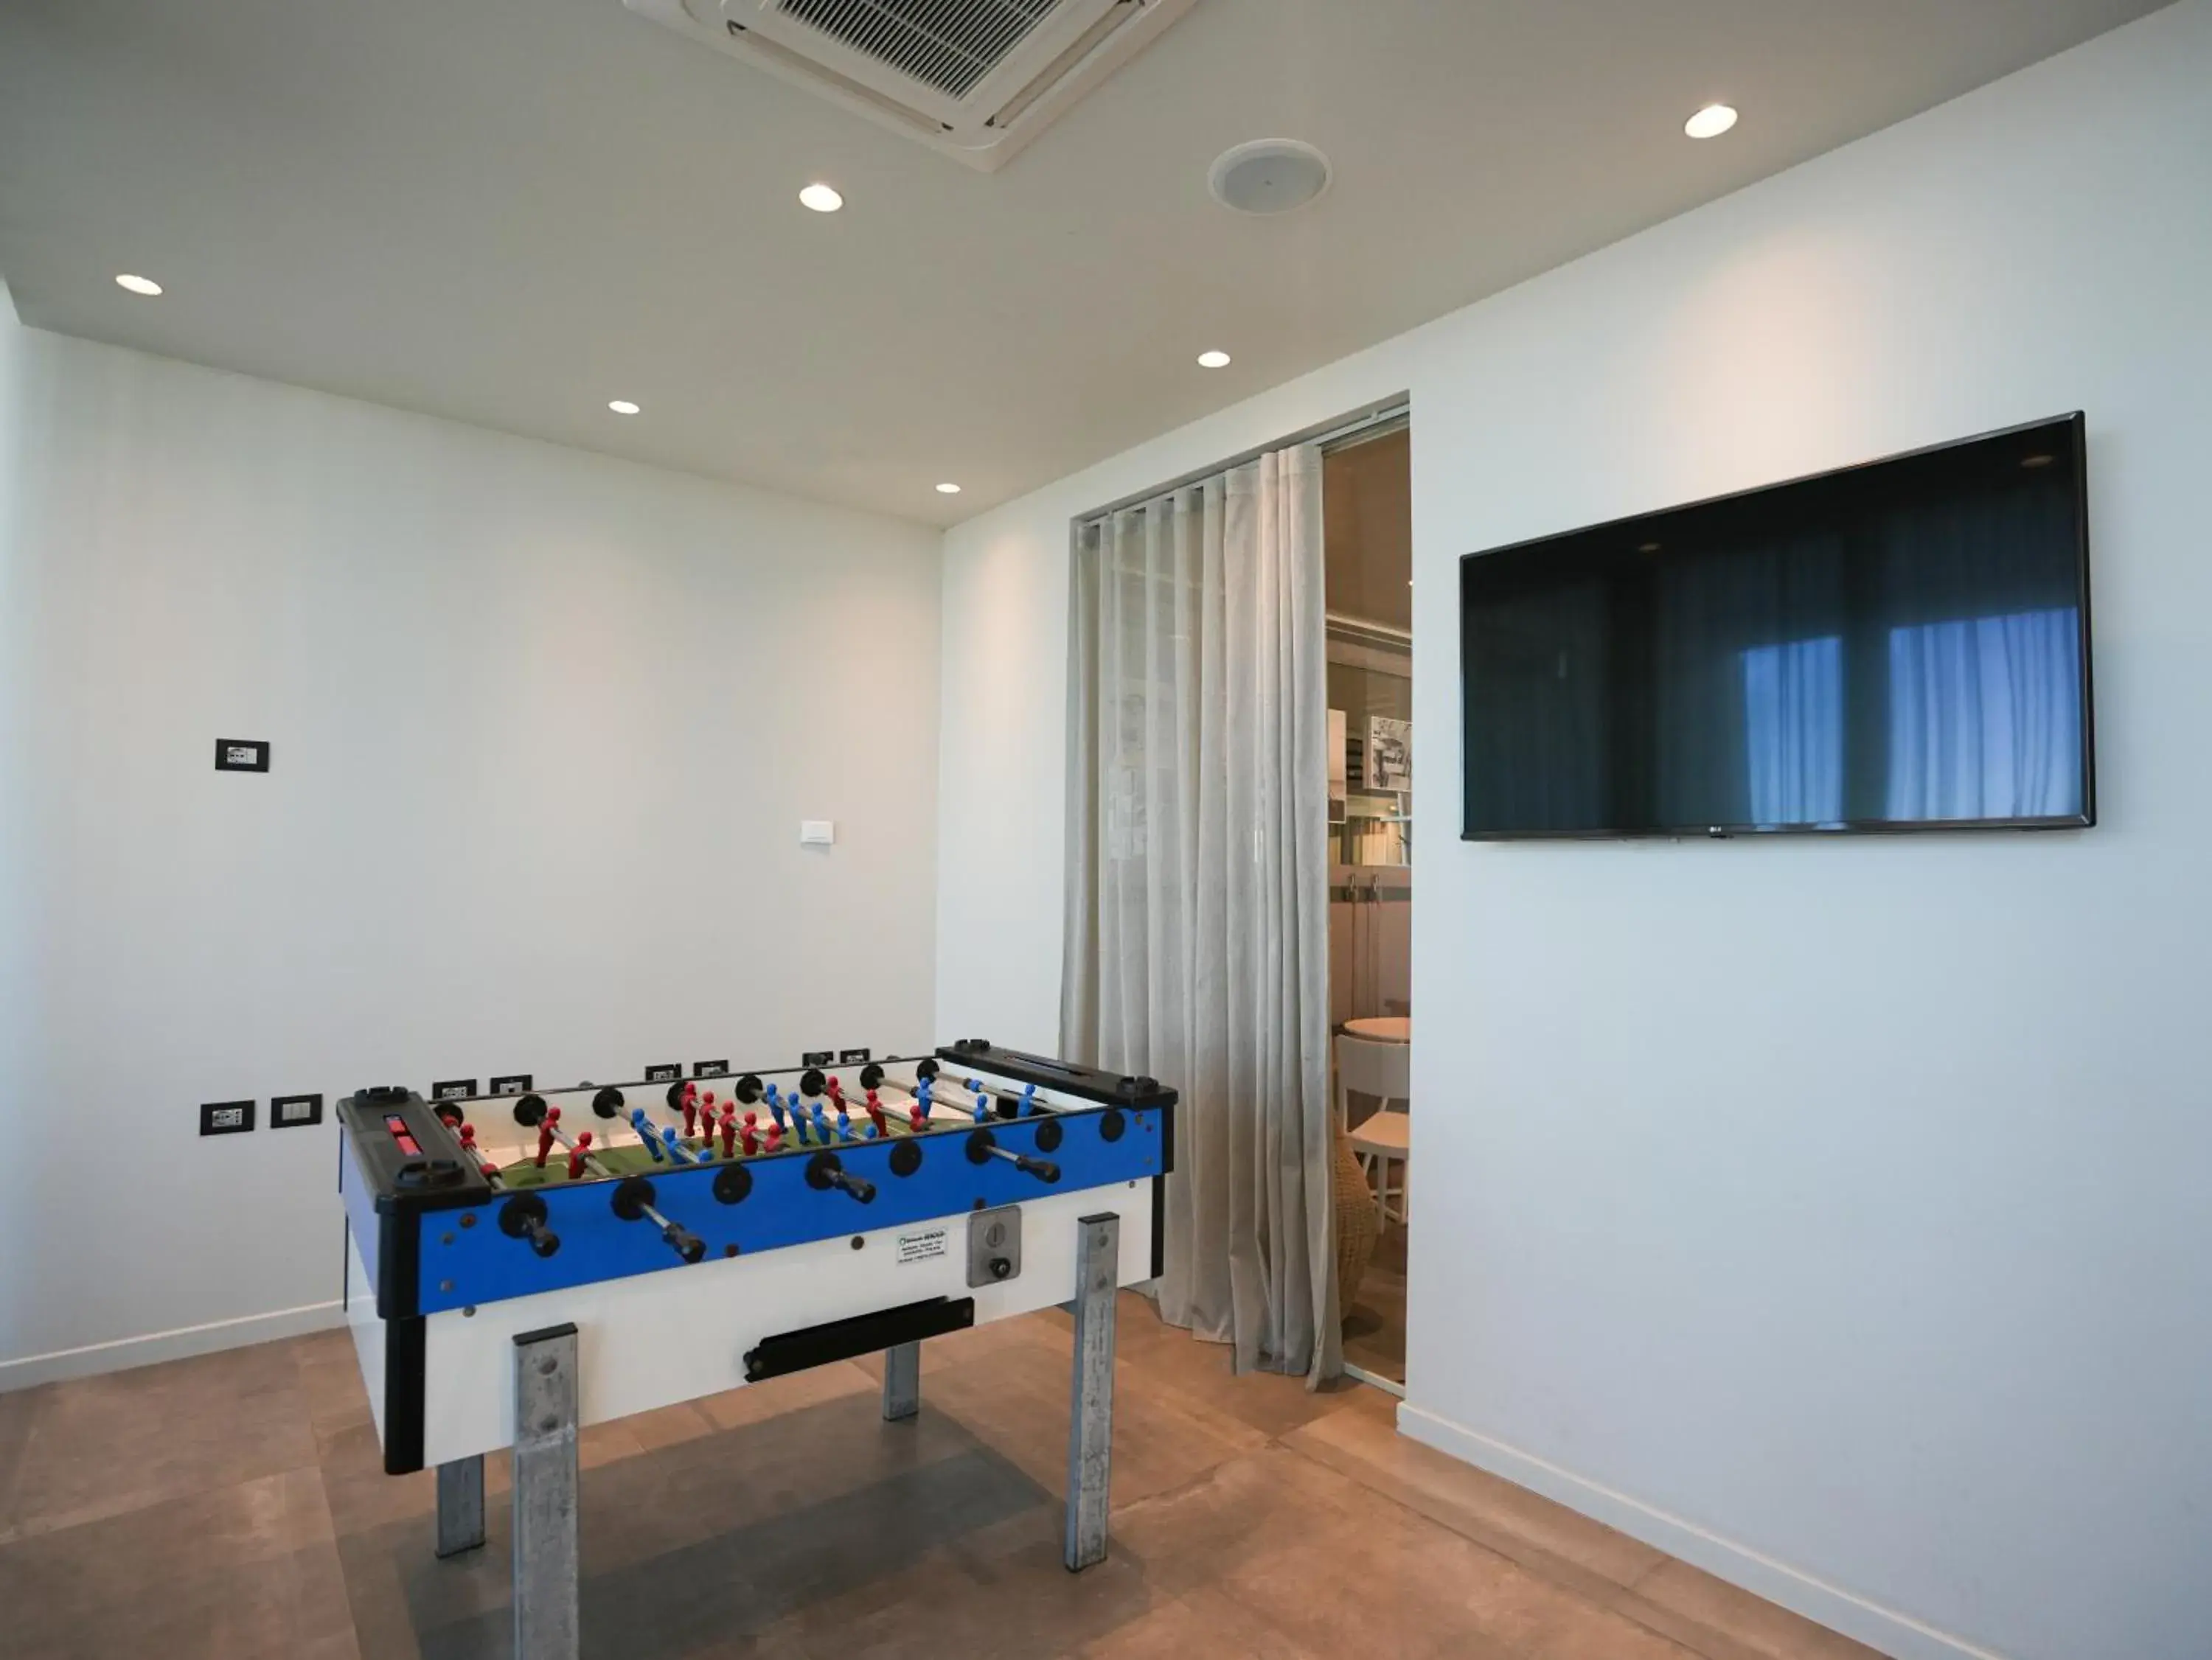 Game Room, Billiards in Nautilus Family Hotel